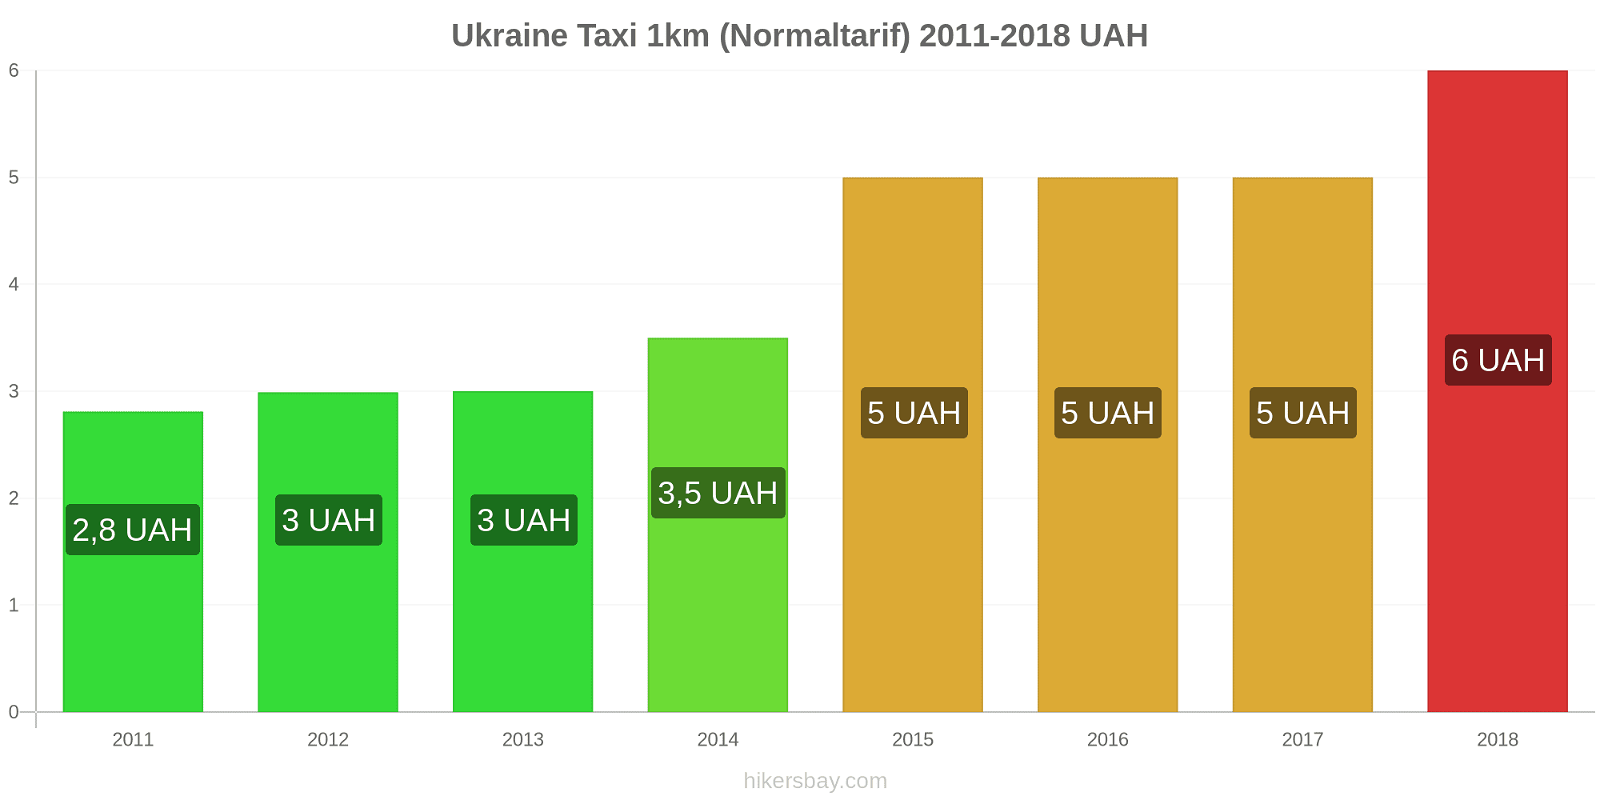 Ukraine Preisänderungen Taxi 1km (Normaltarif) hikersbay.com